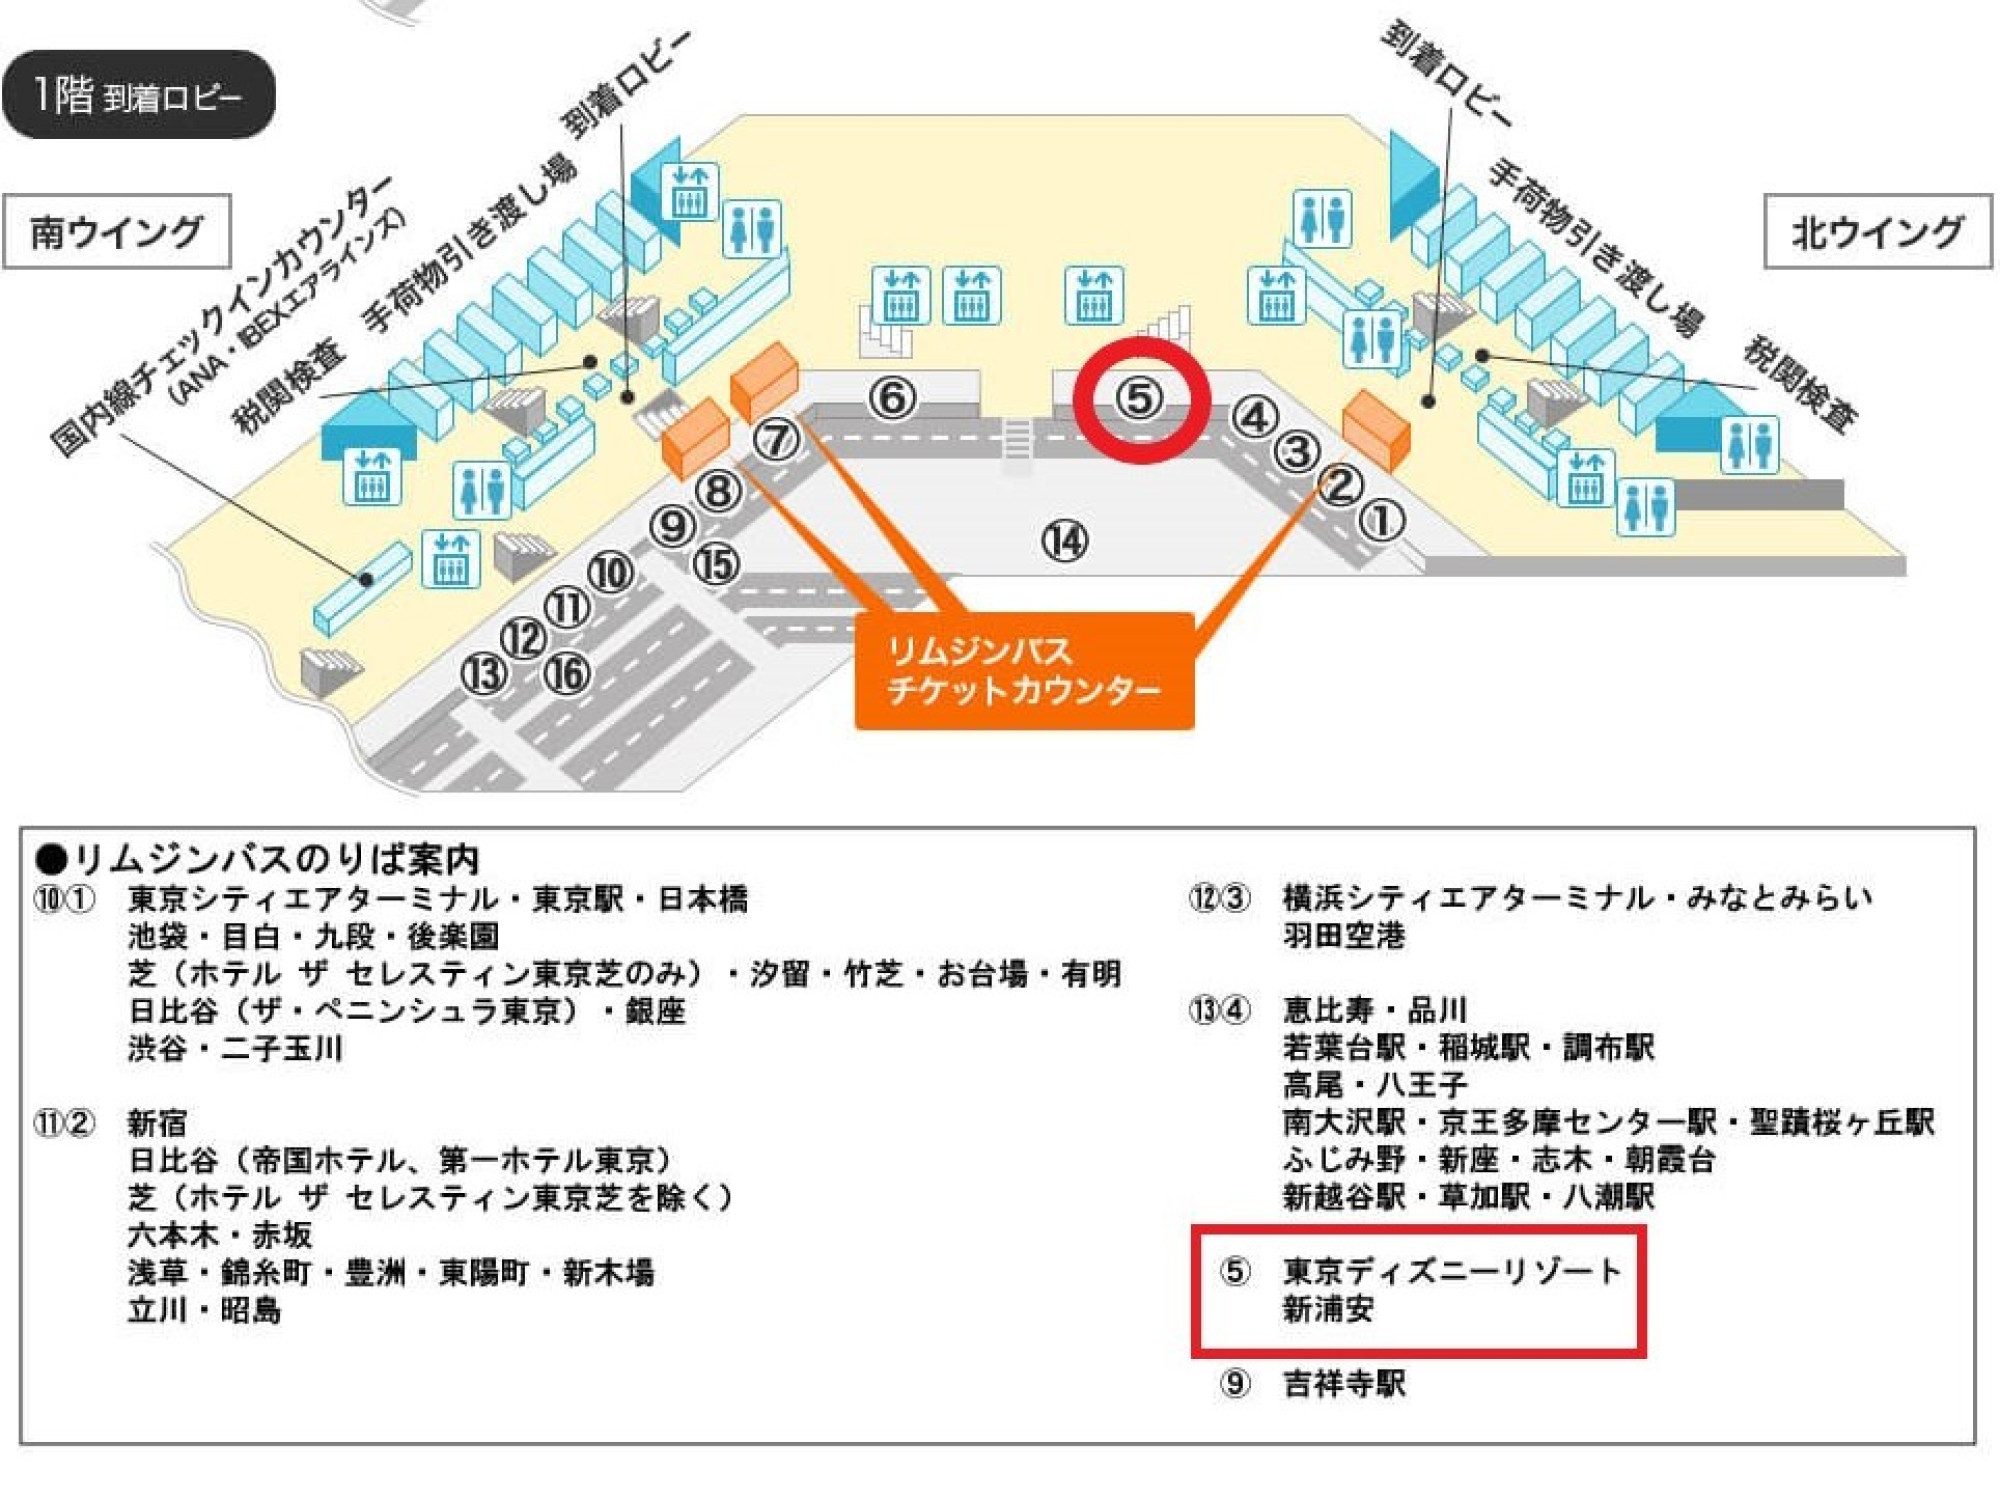 成田空港第1ターミナル ディズニーのバス乗り場 キャステル Castel ディズニー情報